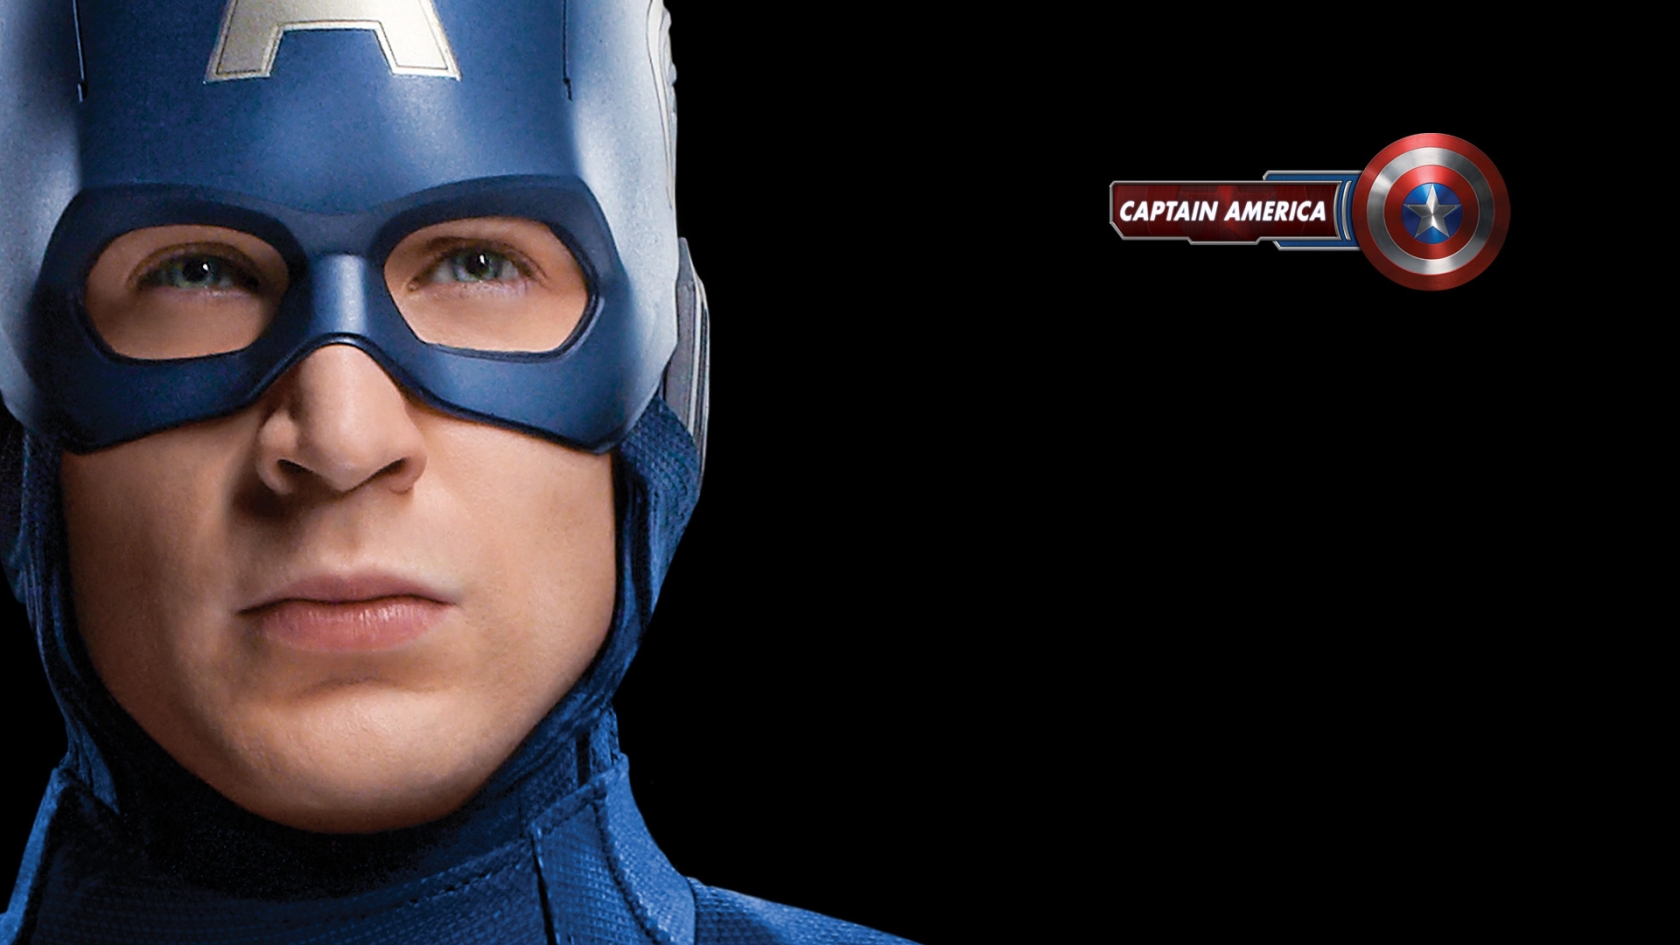 The Avengers Captain America for 1680 x 945 HDTV resolution